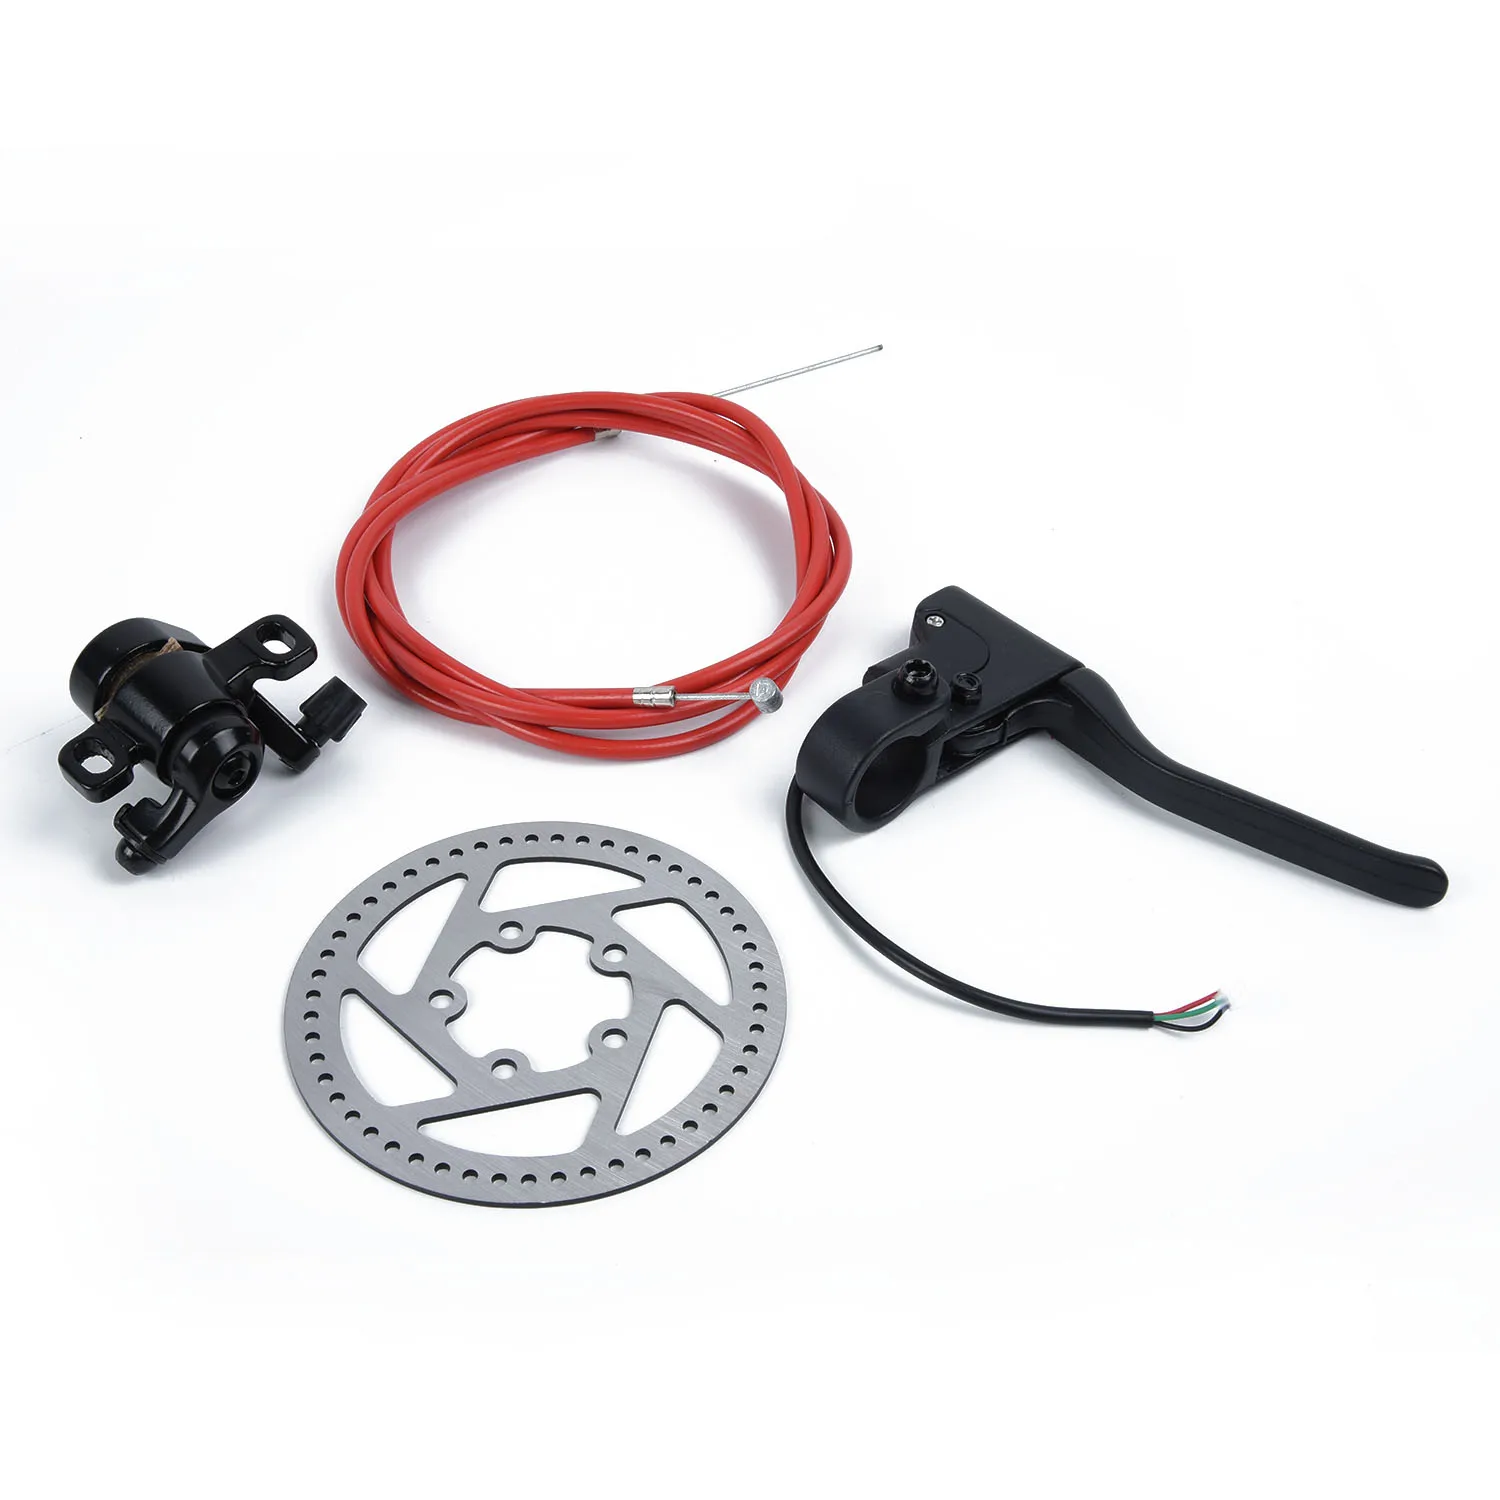 Открытый тормозной кабель комплект Замена тормозной кабель для Xiaomi Mi M365 электрический скутер аксессуары Запчасти Тормозной Рычаг кабель